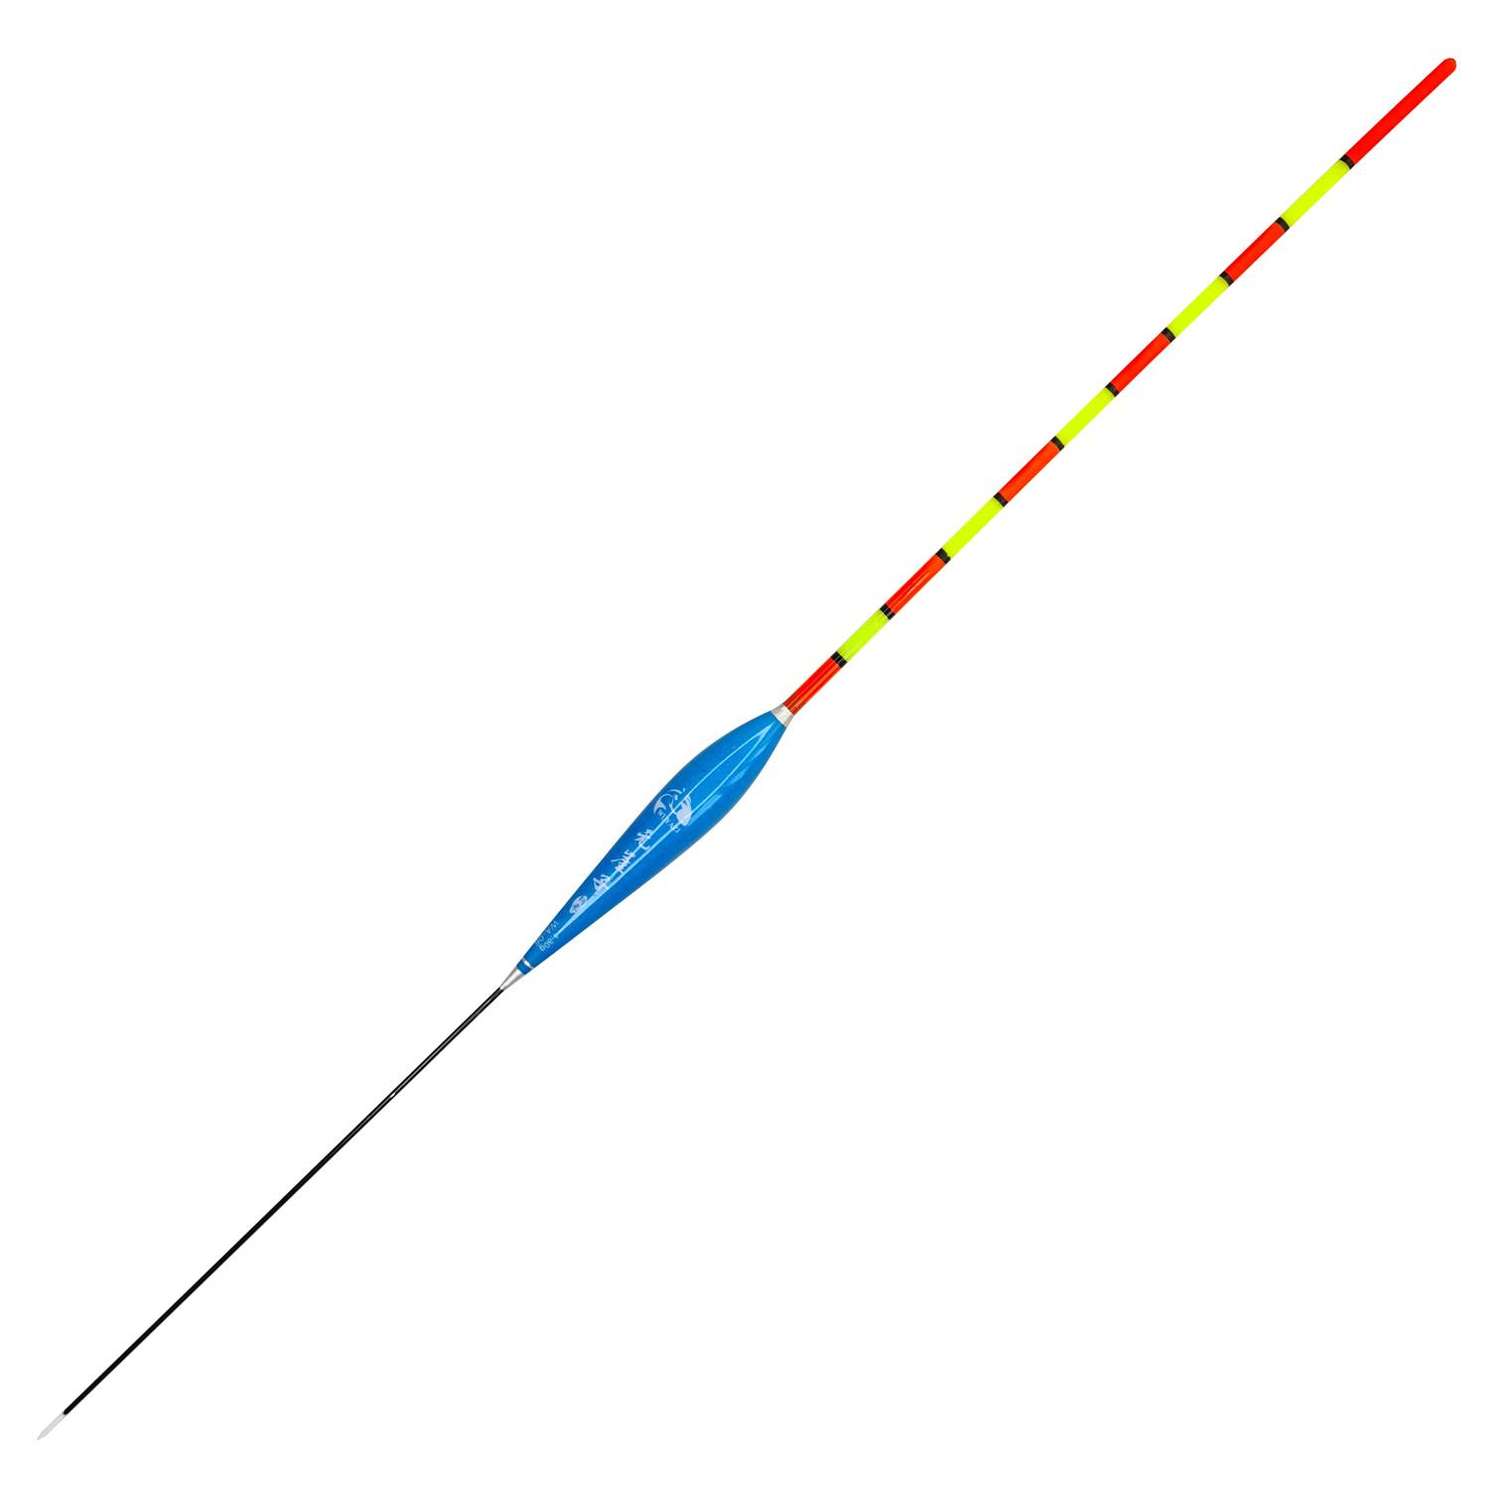 Поплавок Клёв100 для Херабуна Wuyazi длина 36.5см грузоподъемность 4.3г - фото 1